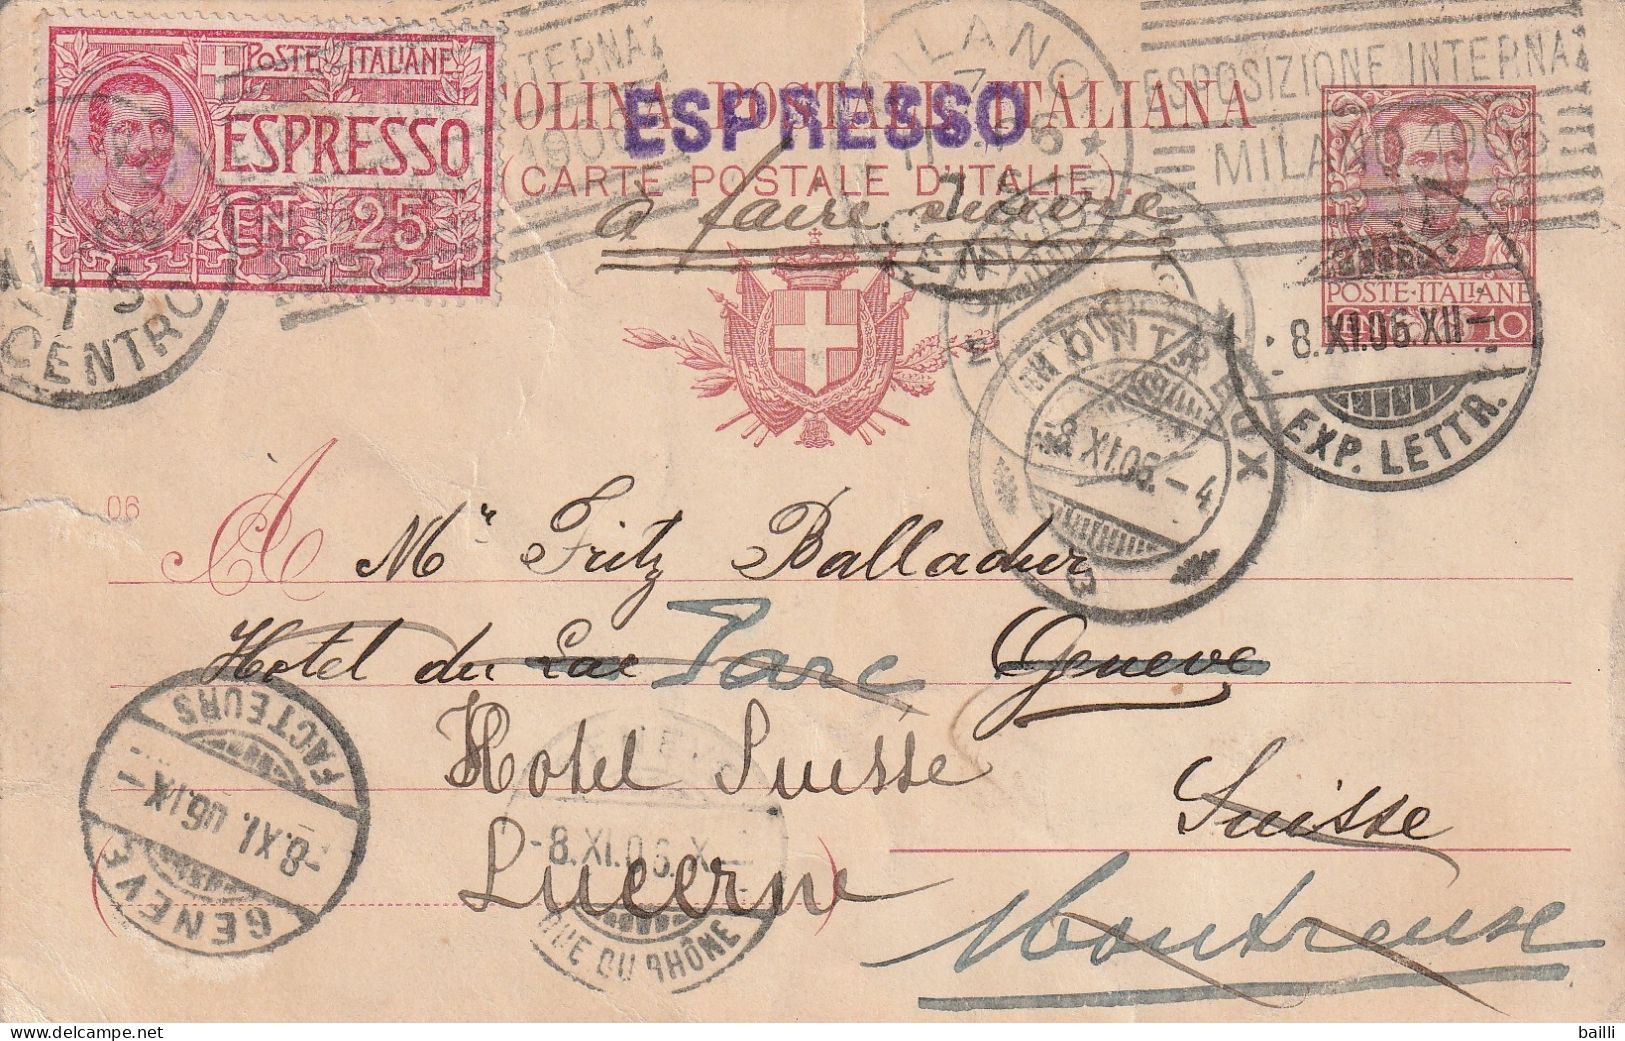 Italie Entier Postal Par Exprès Milano Pour La Suisse 1906 - Stamped Stationery